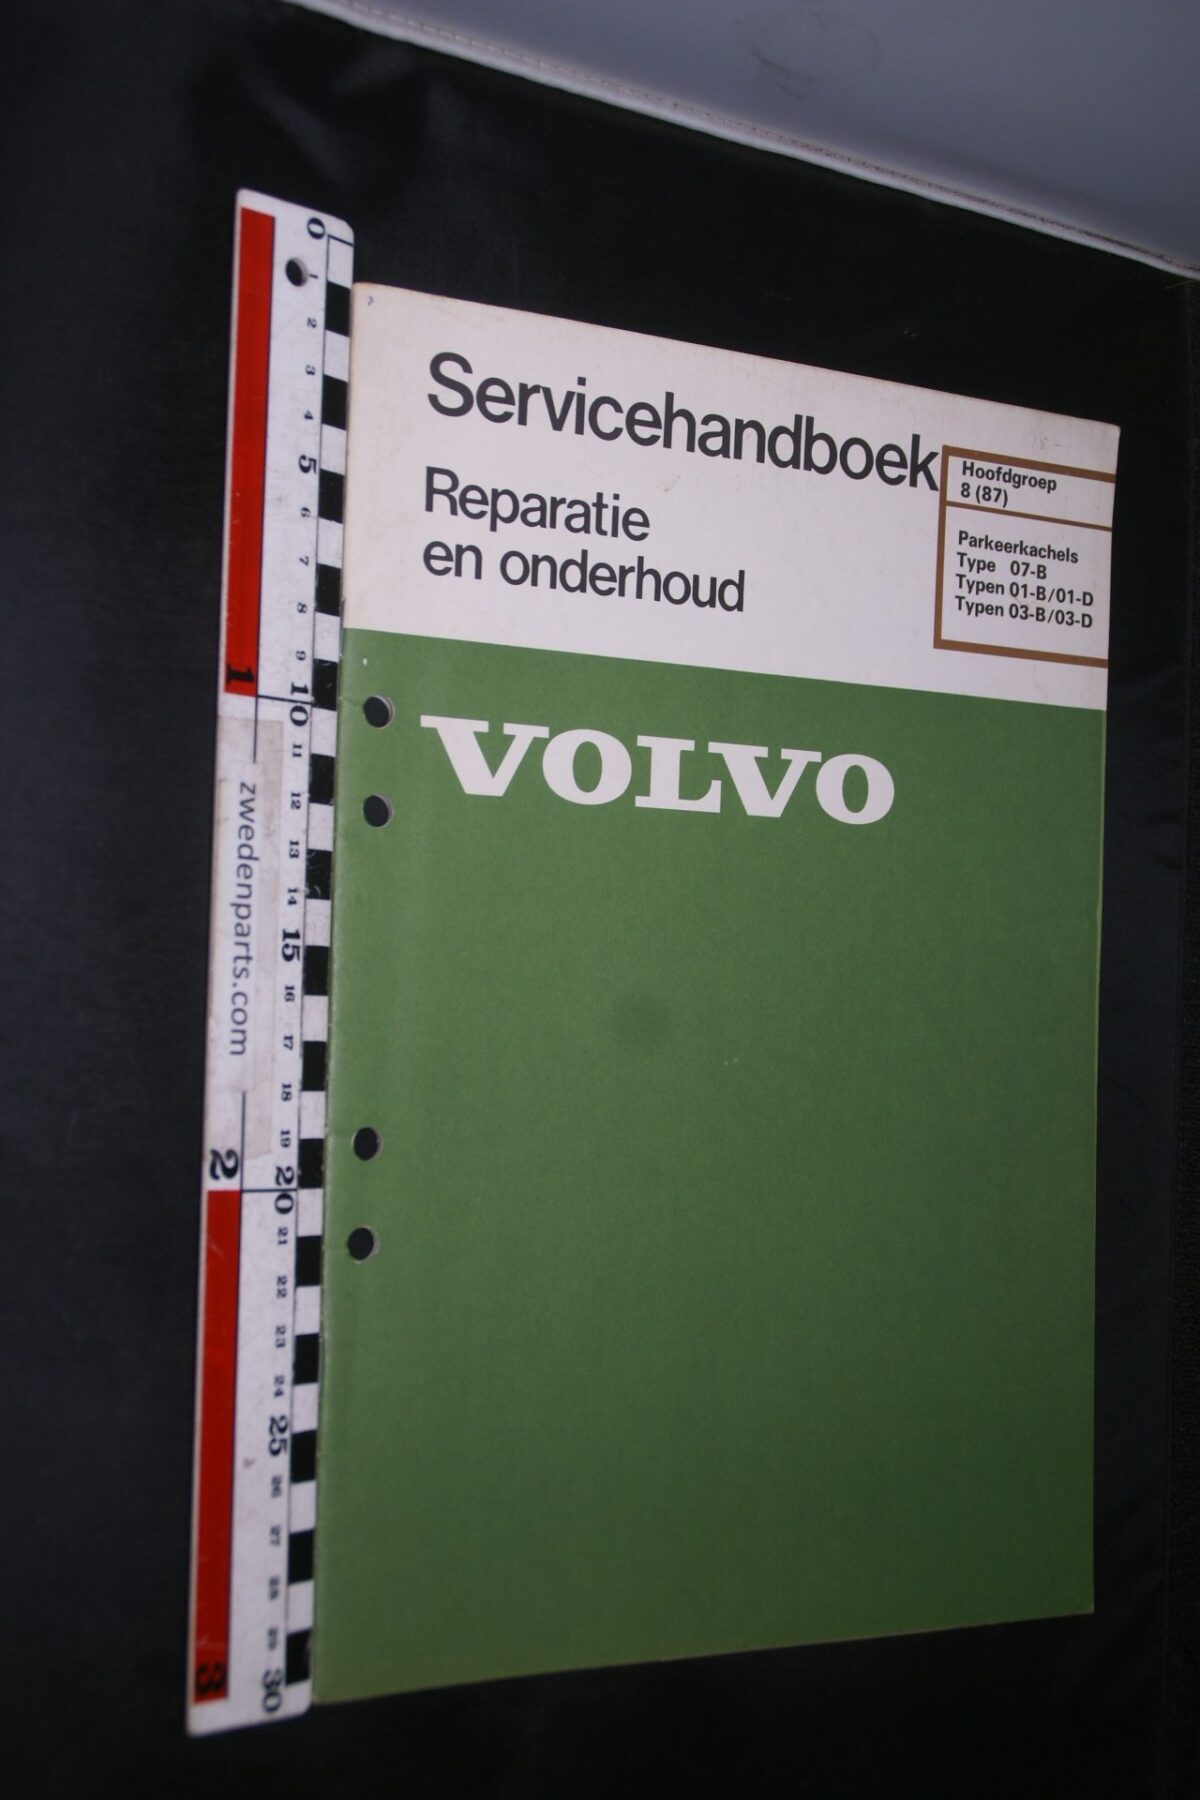 DSC03485 1980 handleiding Volvo 240 260 parkeerkachels 1 van 800 TP30207 1 rotated